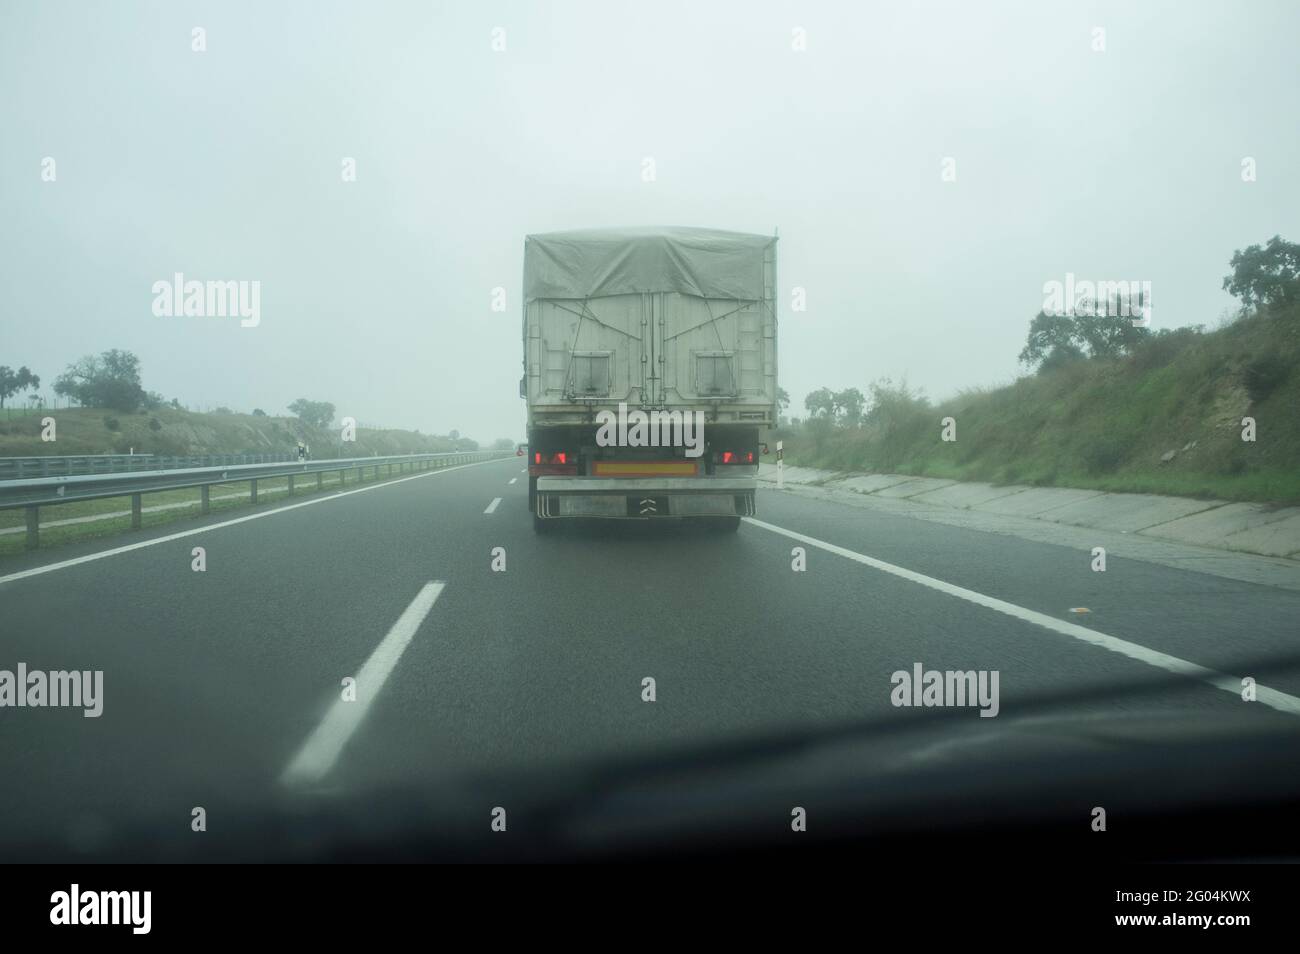 Guida dietro un carrello sotto nebbia fitta. Concetto di guida in caso di cattive condizioni atmosferiche Foto Stock